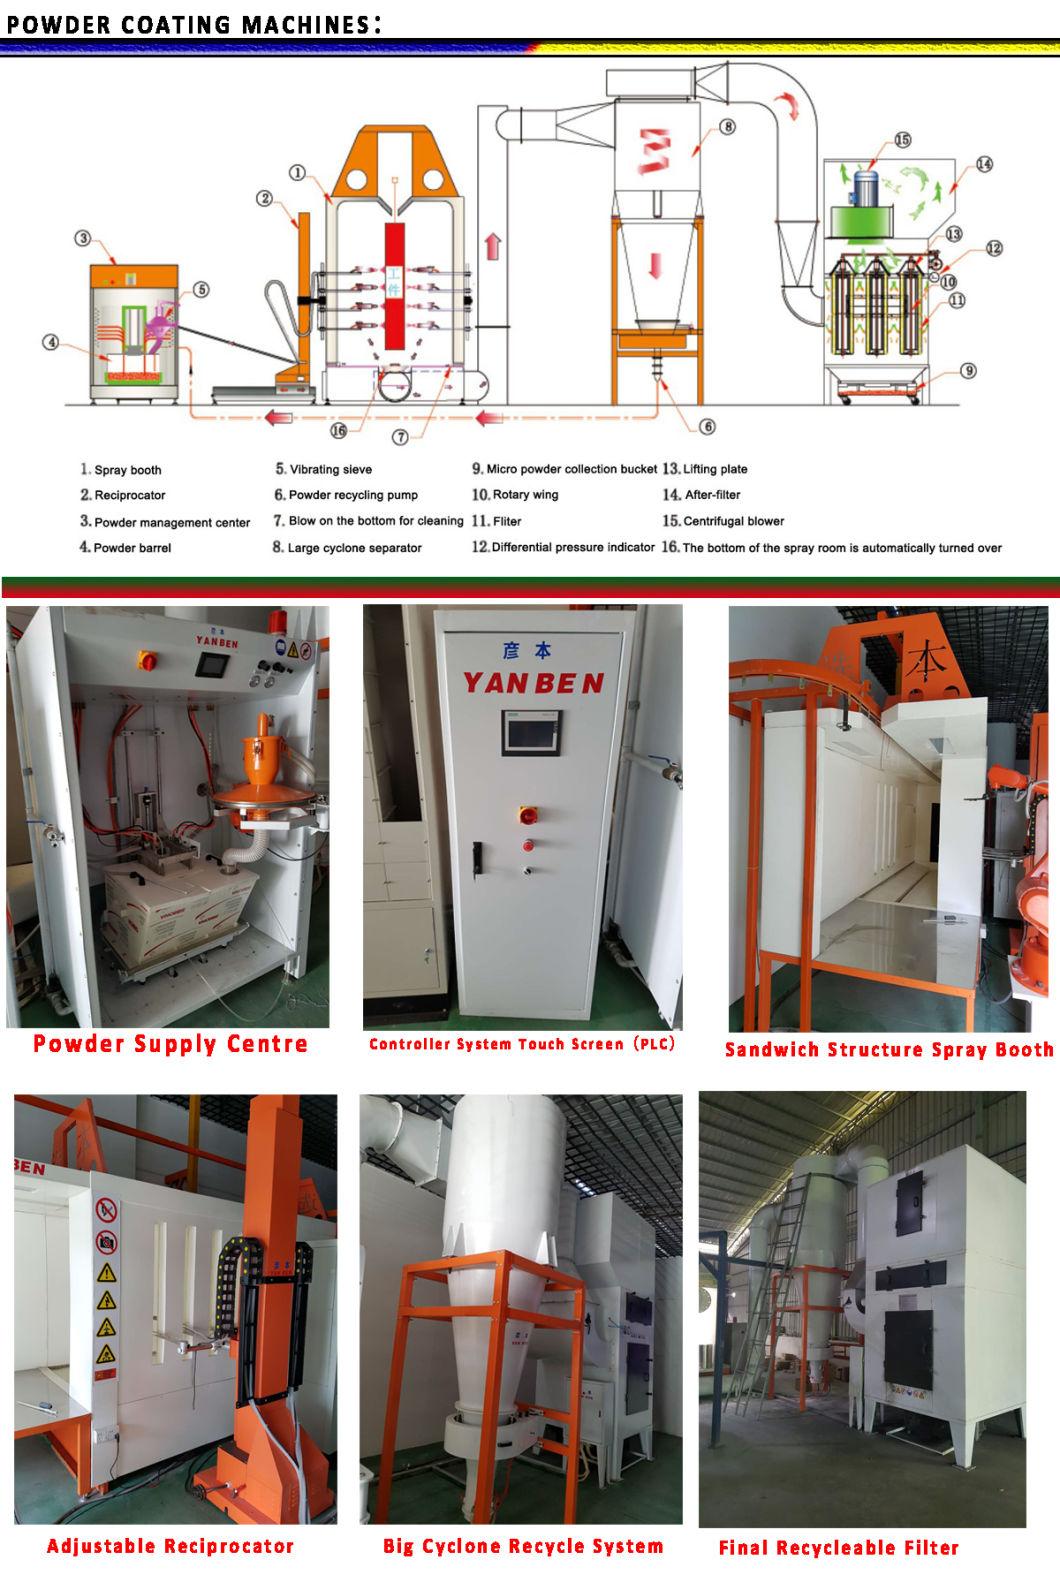 Fire Door Electrostatic Powder Coating Machine Supplier